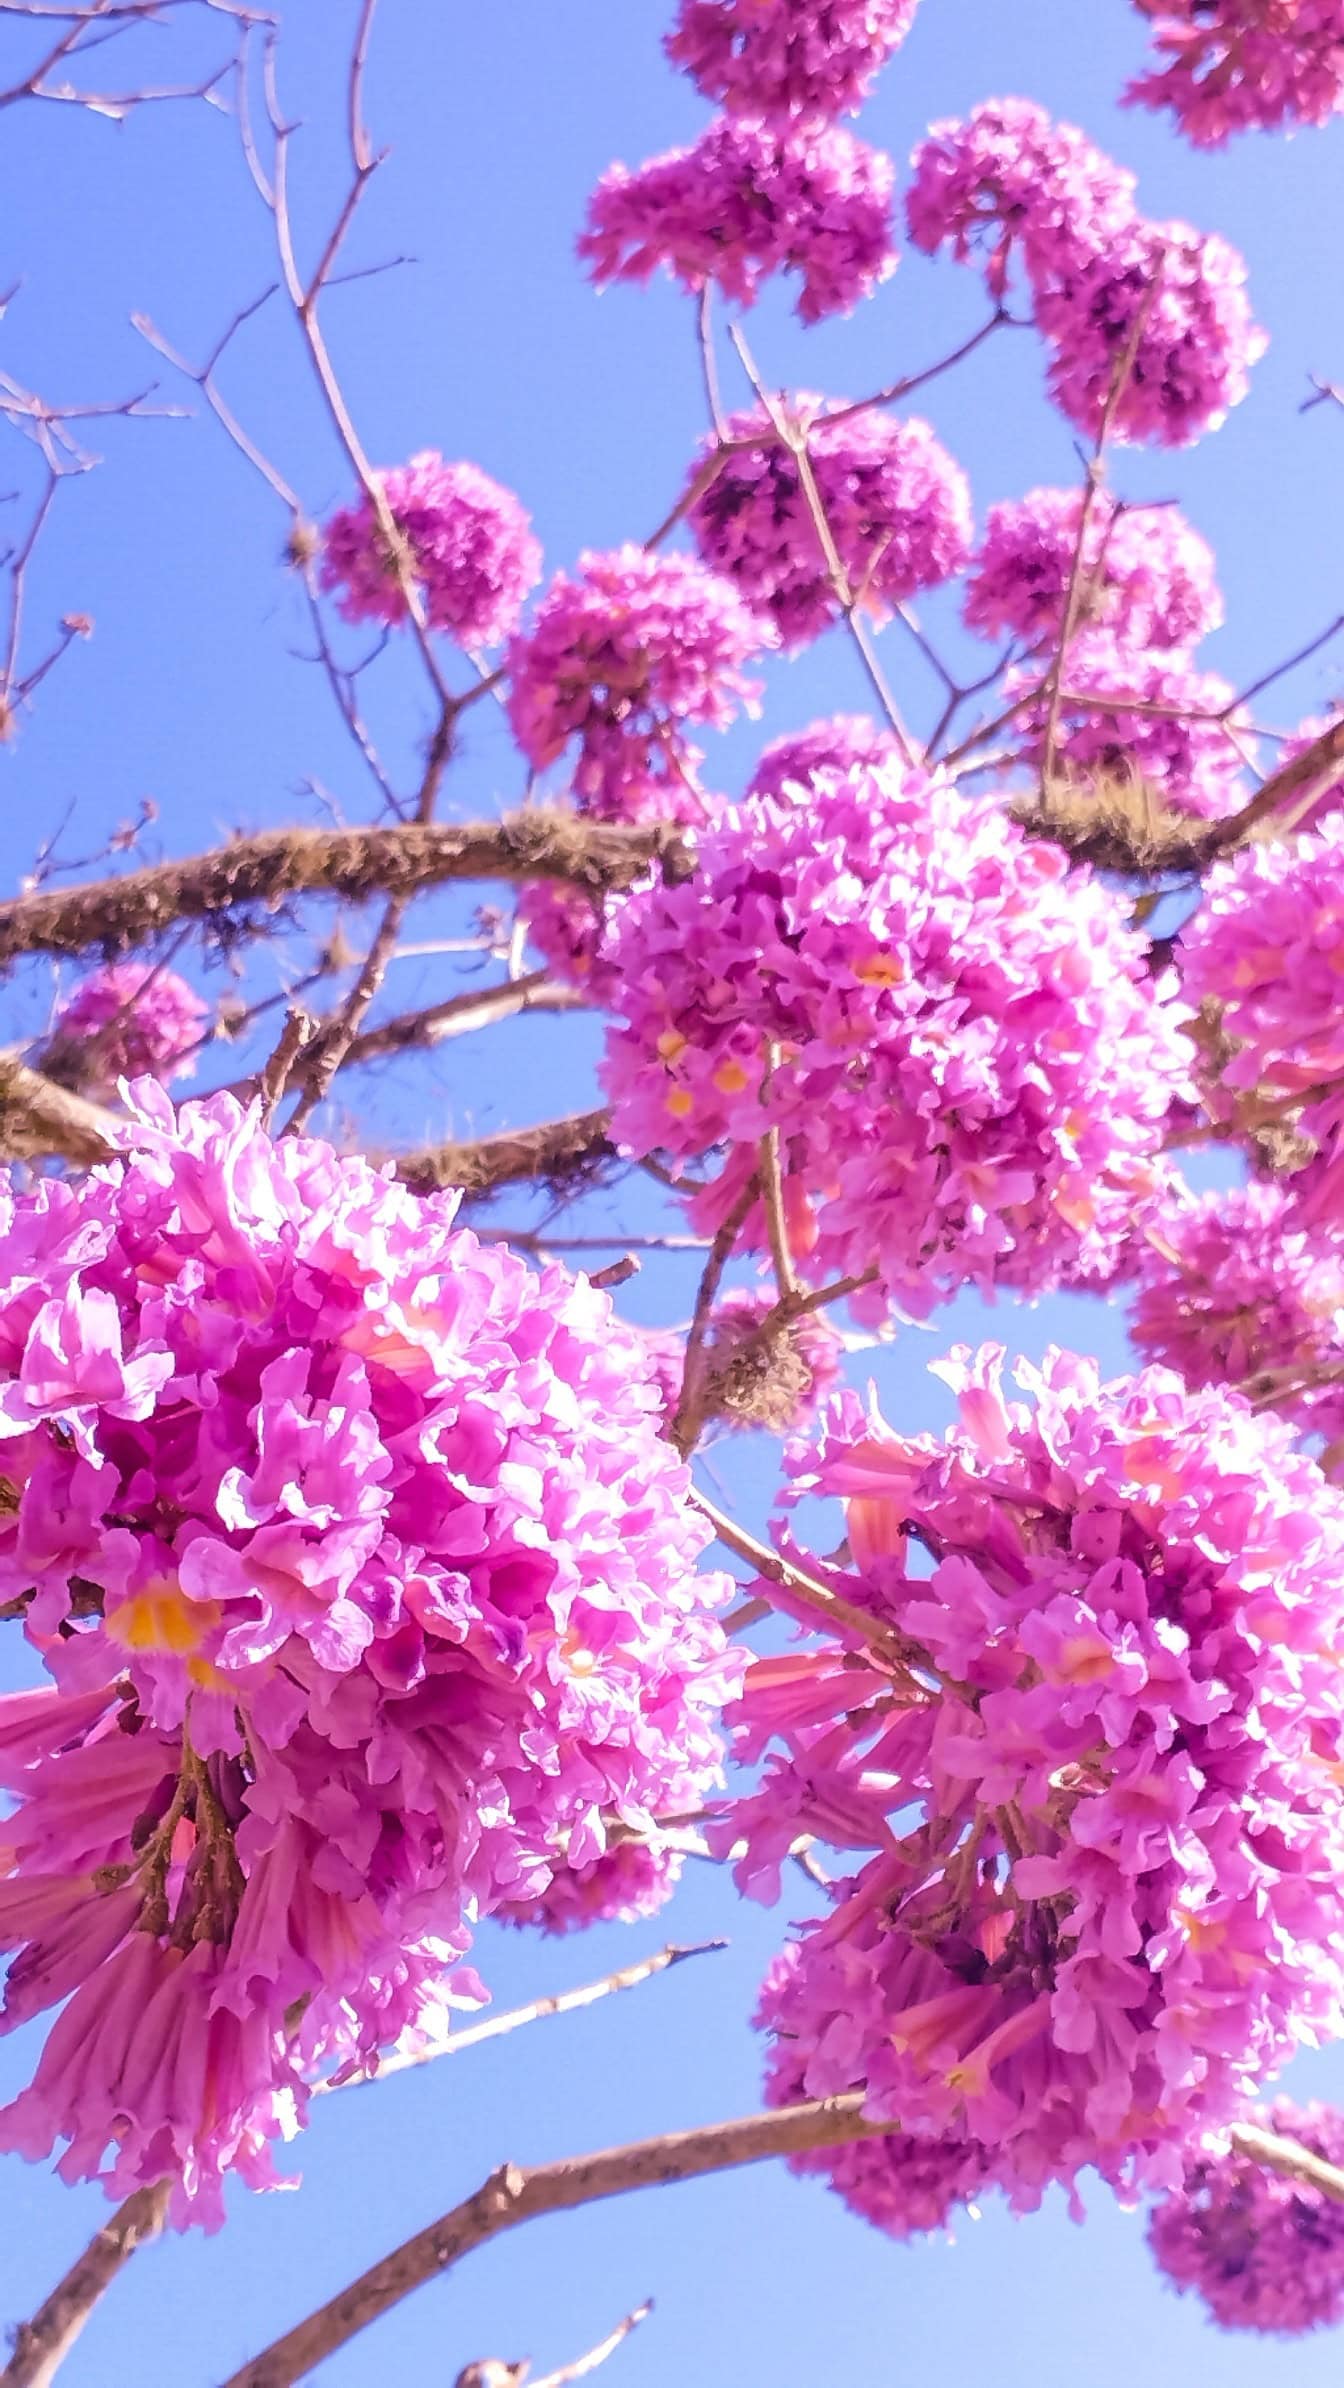 ดอกไม้สีม่วงอมชมพูที่สวยงามบนต้นไม้ที่เรียกว่าต้นทรัมเป็ตสีดอกกุหลาบหรือ(Tabebuia rosea)พูยสีชมพู